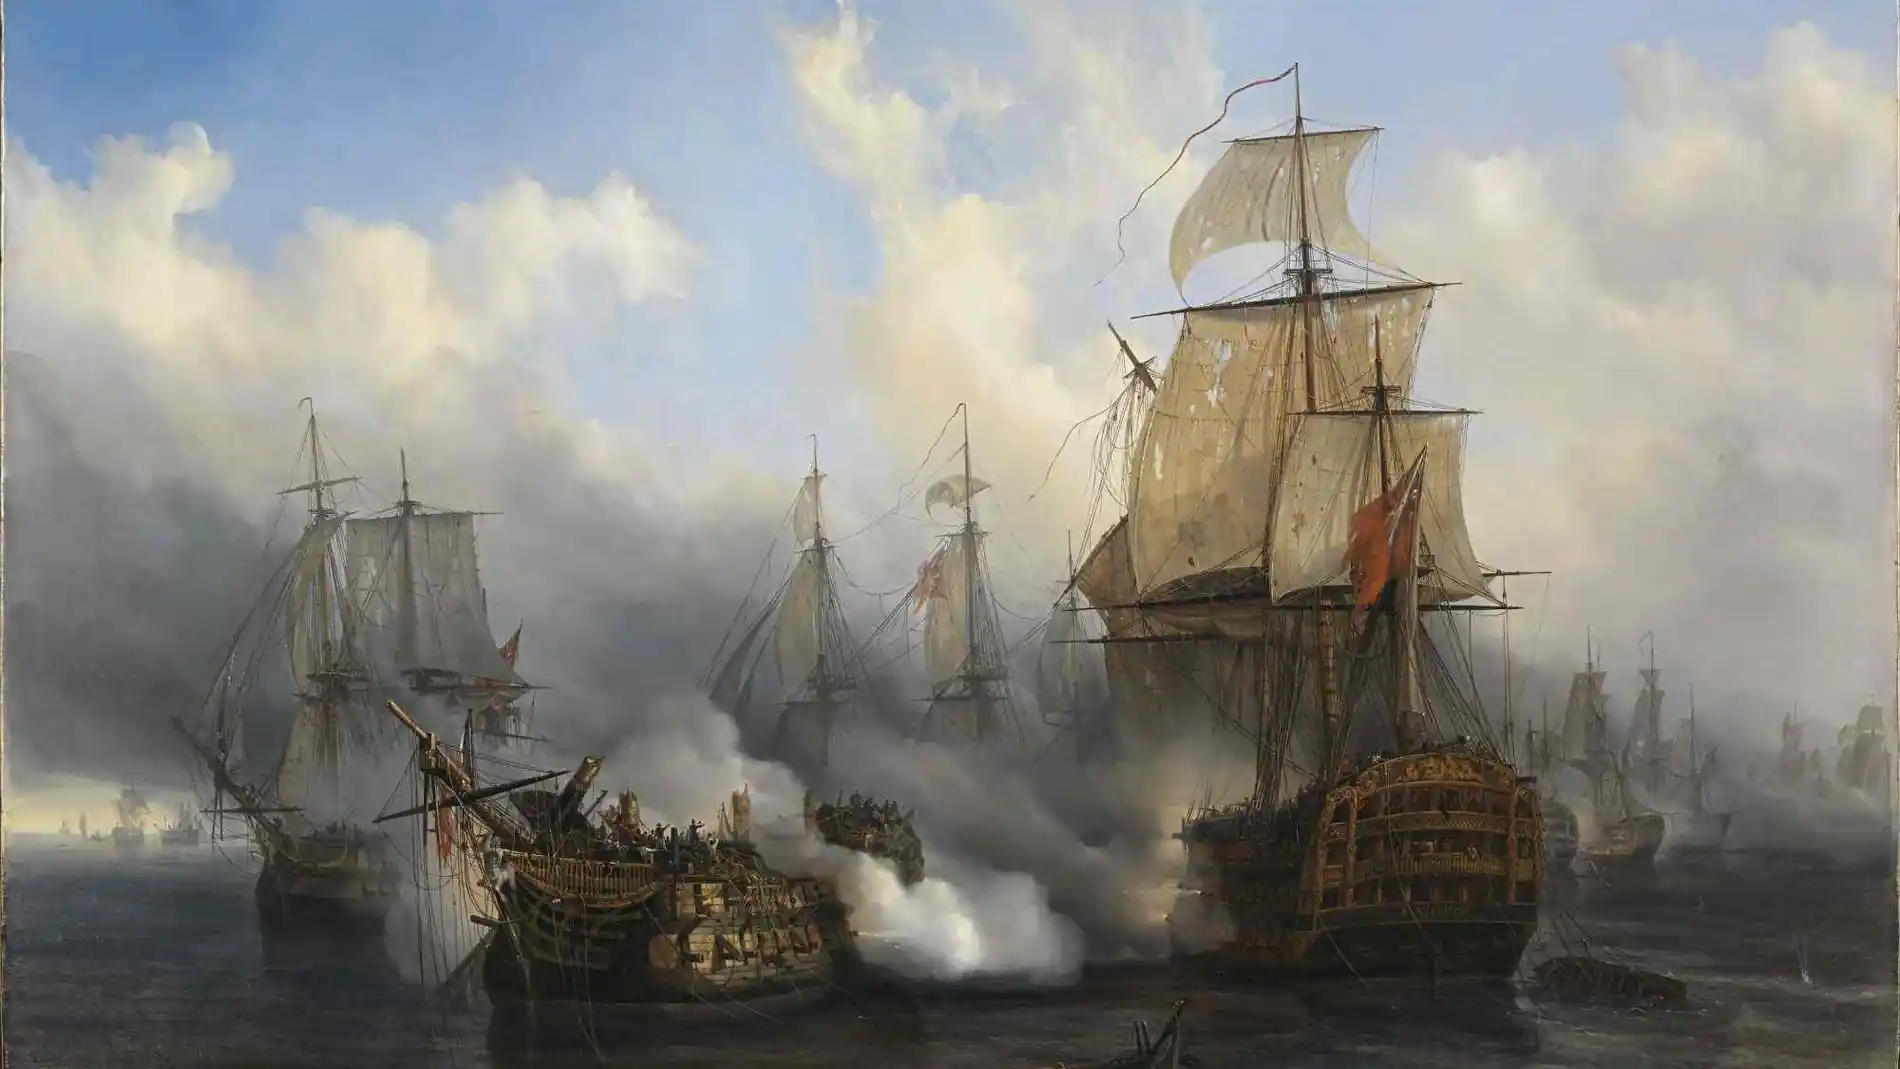 "Batalla de Trafalgar"